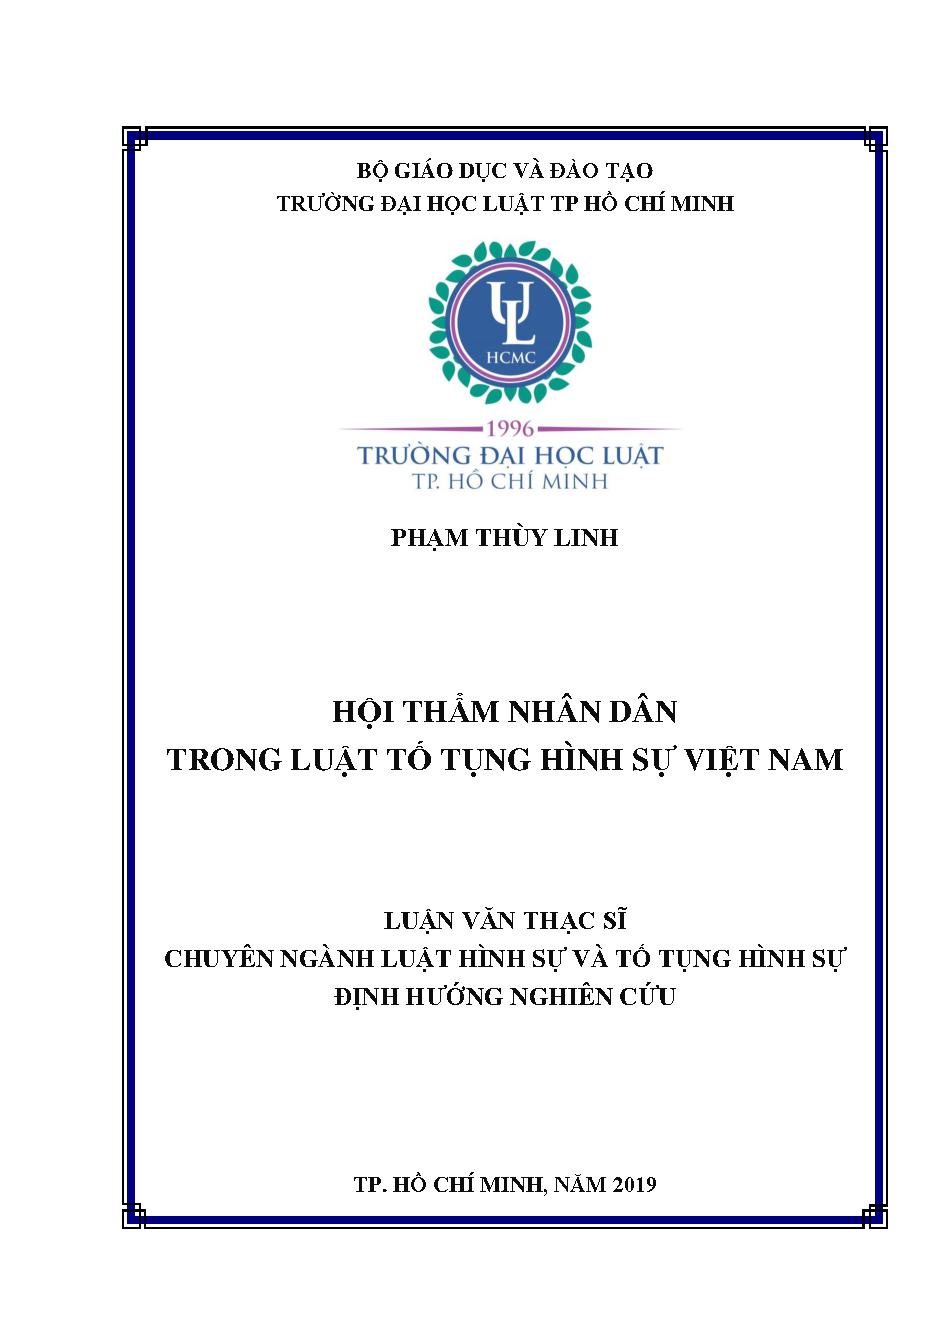 Hội thẩm nhân dân trong luật Tố tụng Hình sự Việt Nam